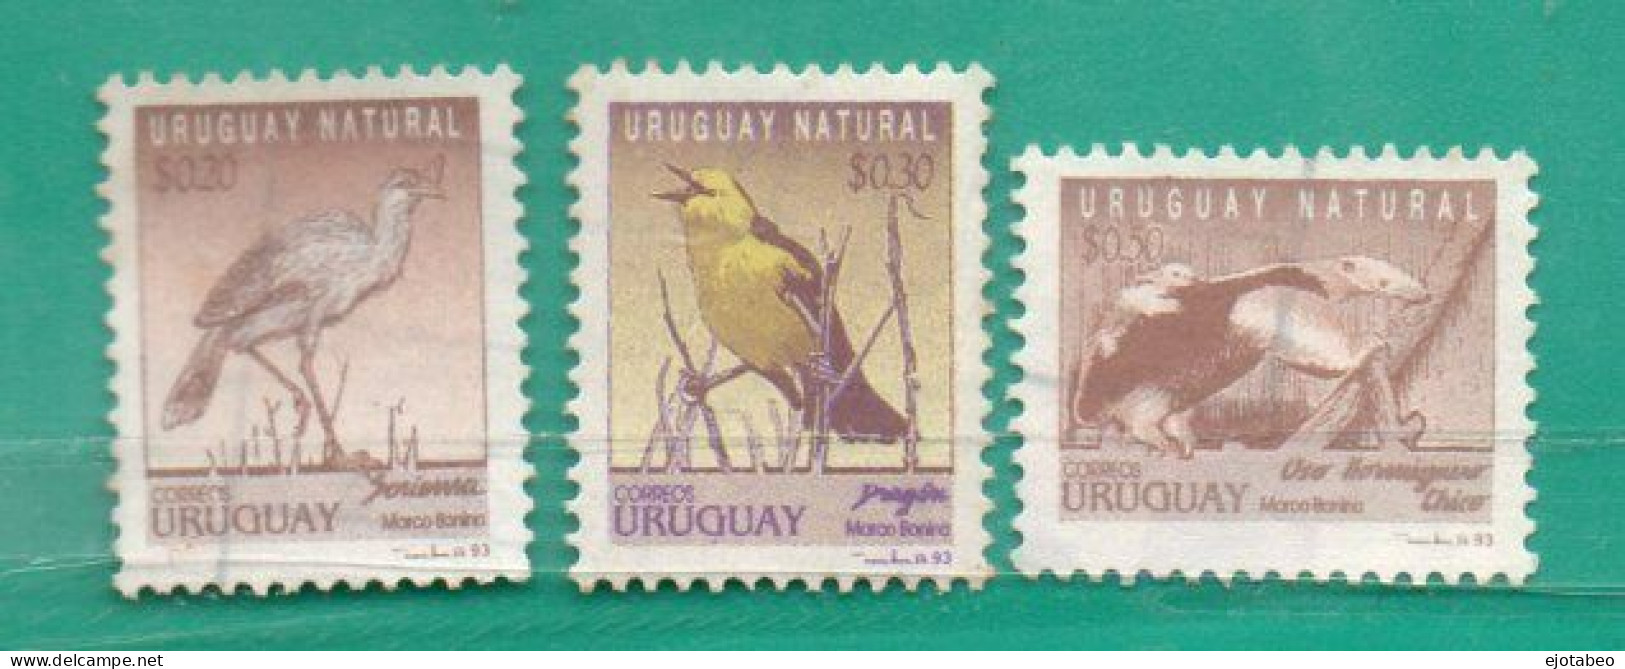 821  Uruguay  1993 YT 1448/50ss Usadas-Uruguay Natural Aves- TT: Fauna Indígena - Uruguay